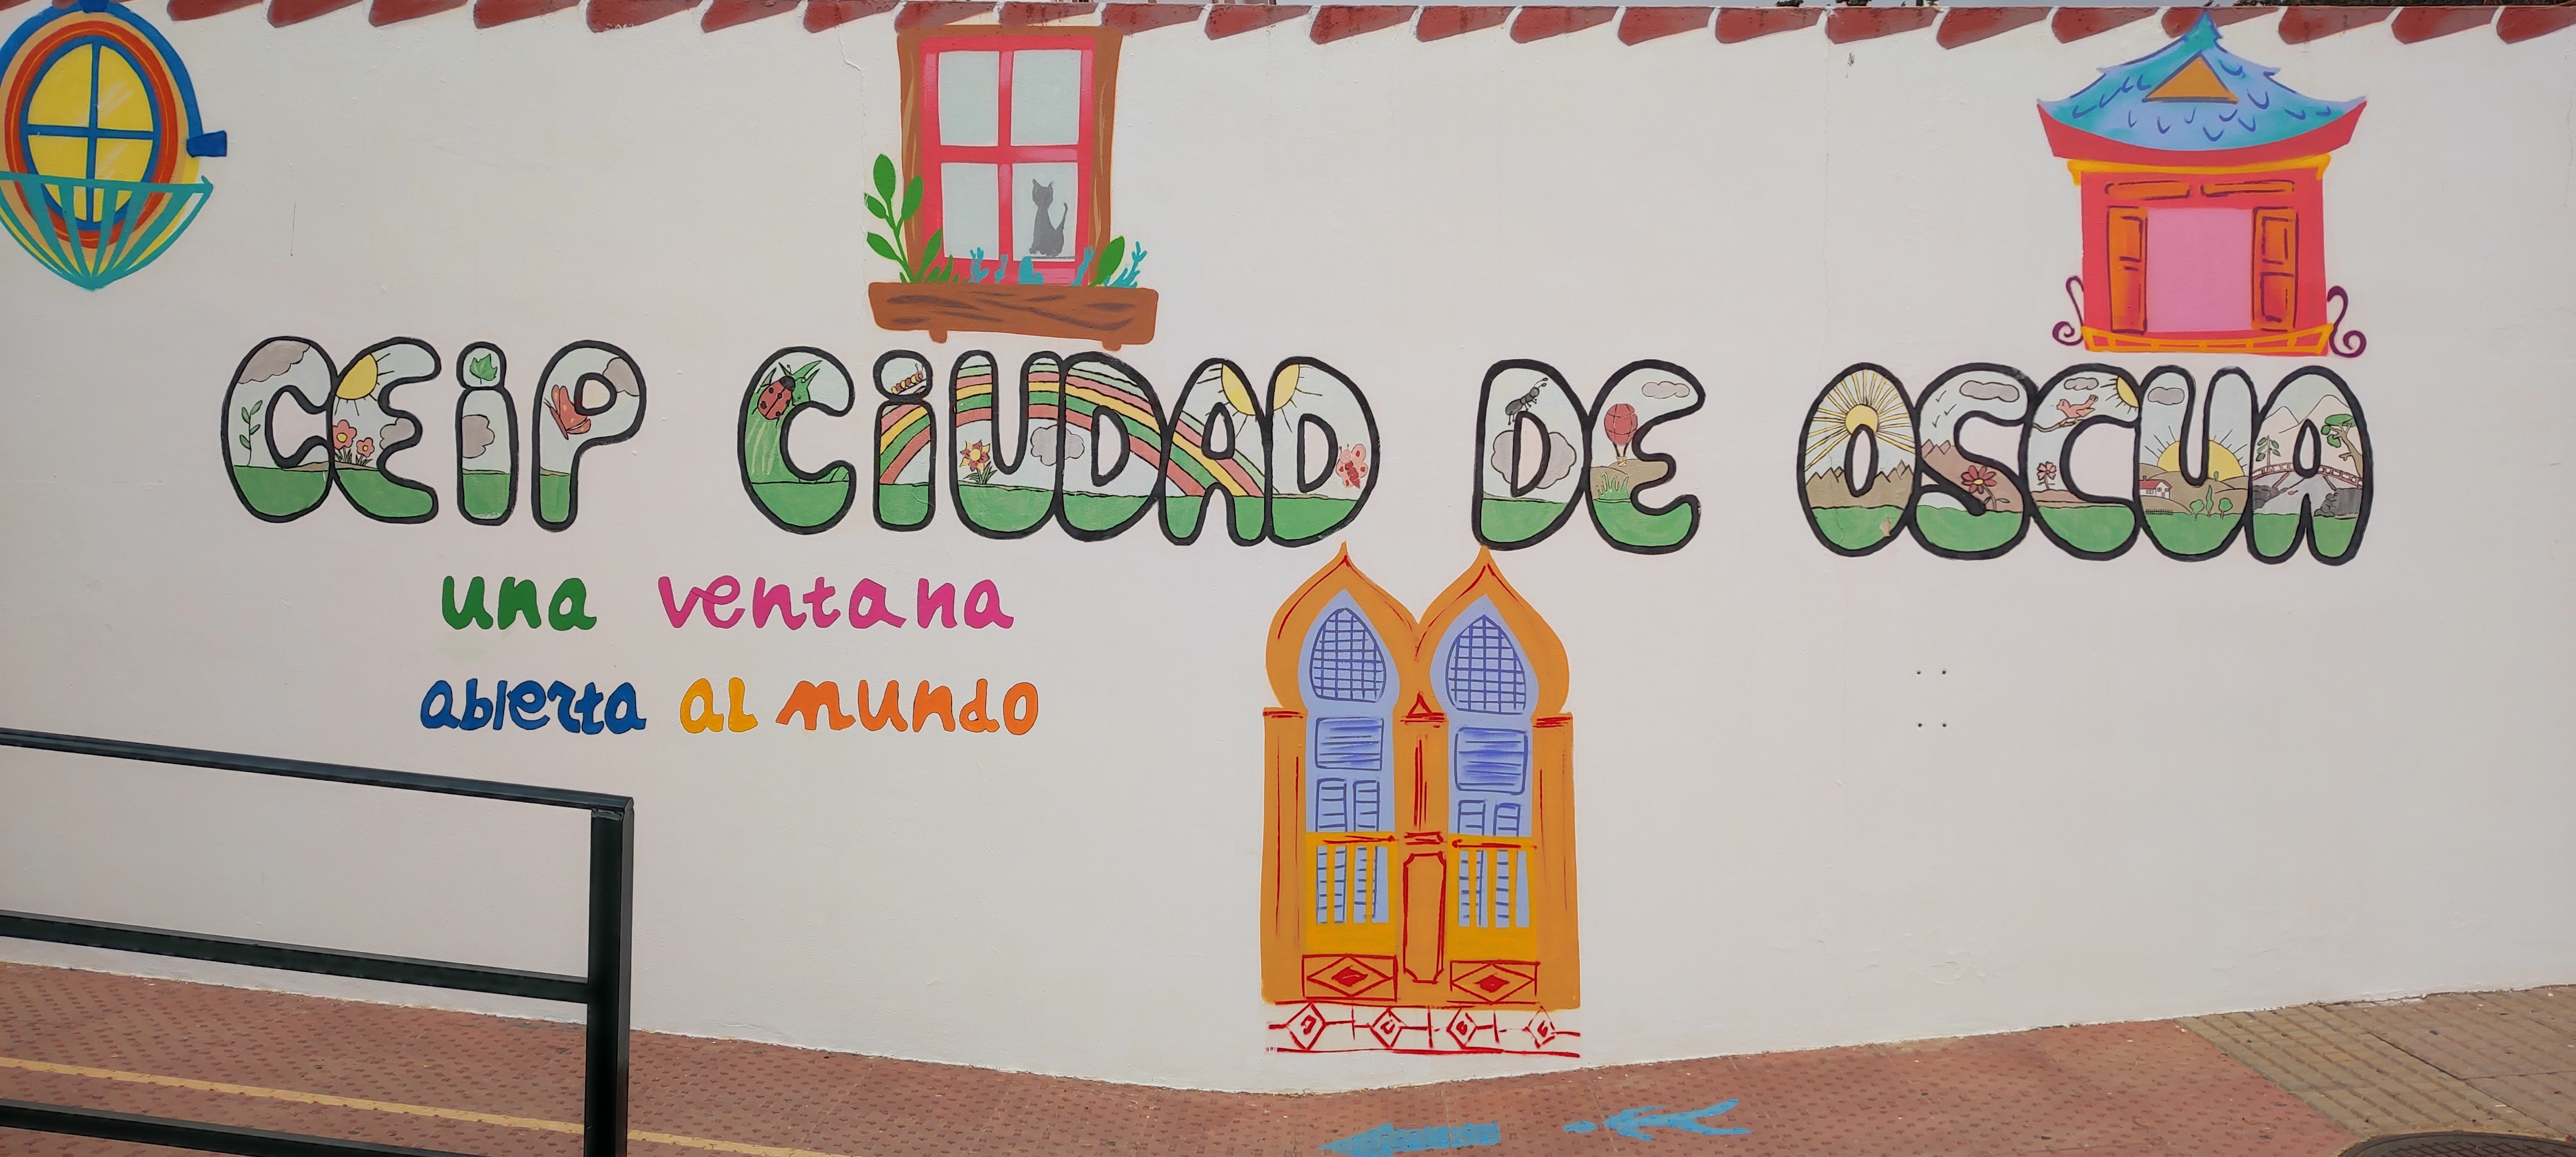 Mural del CEIP Ciudad de Oscua